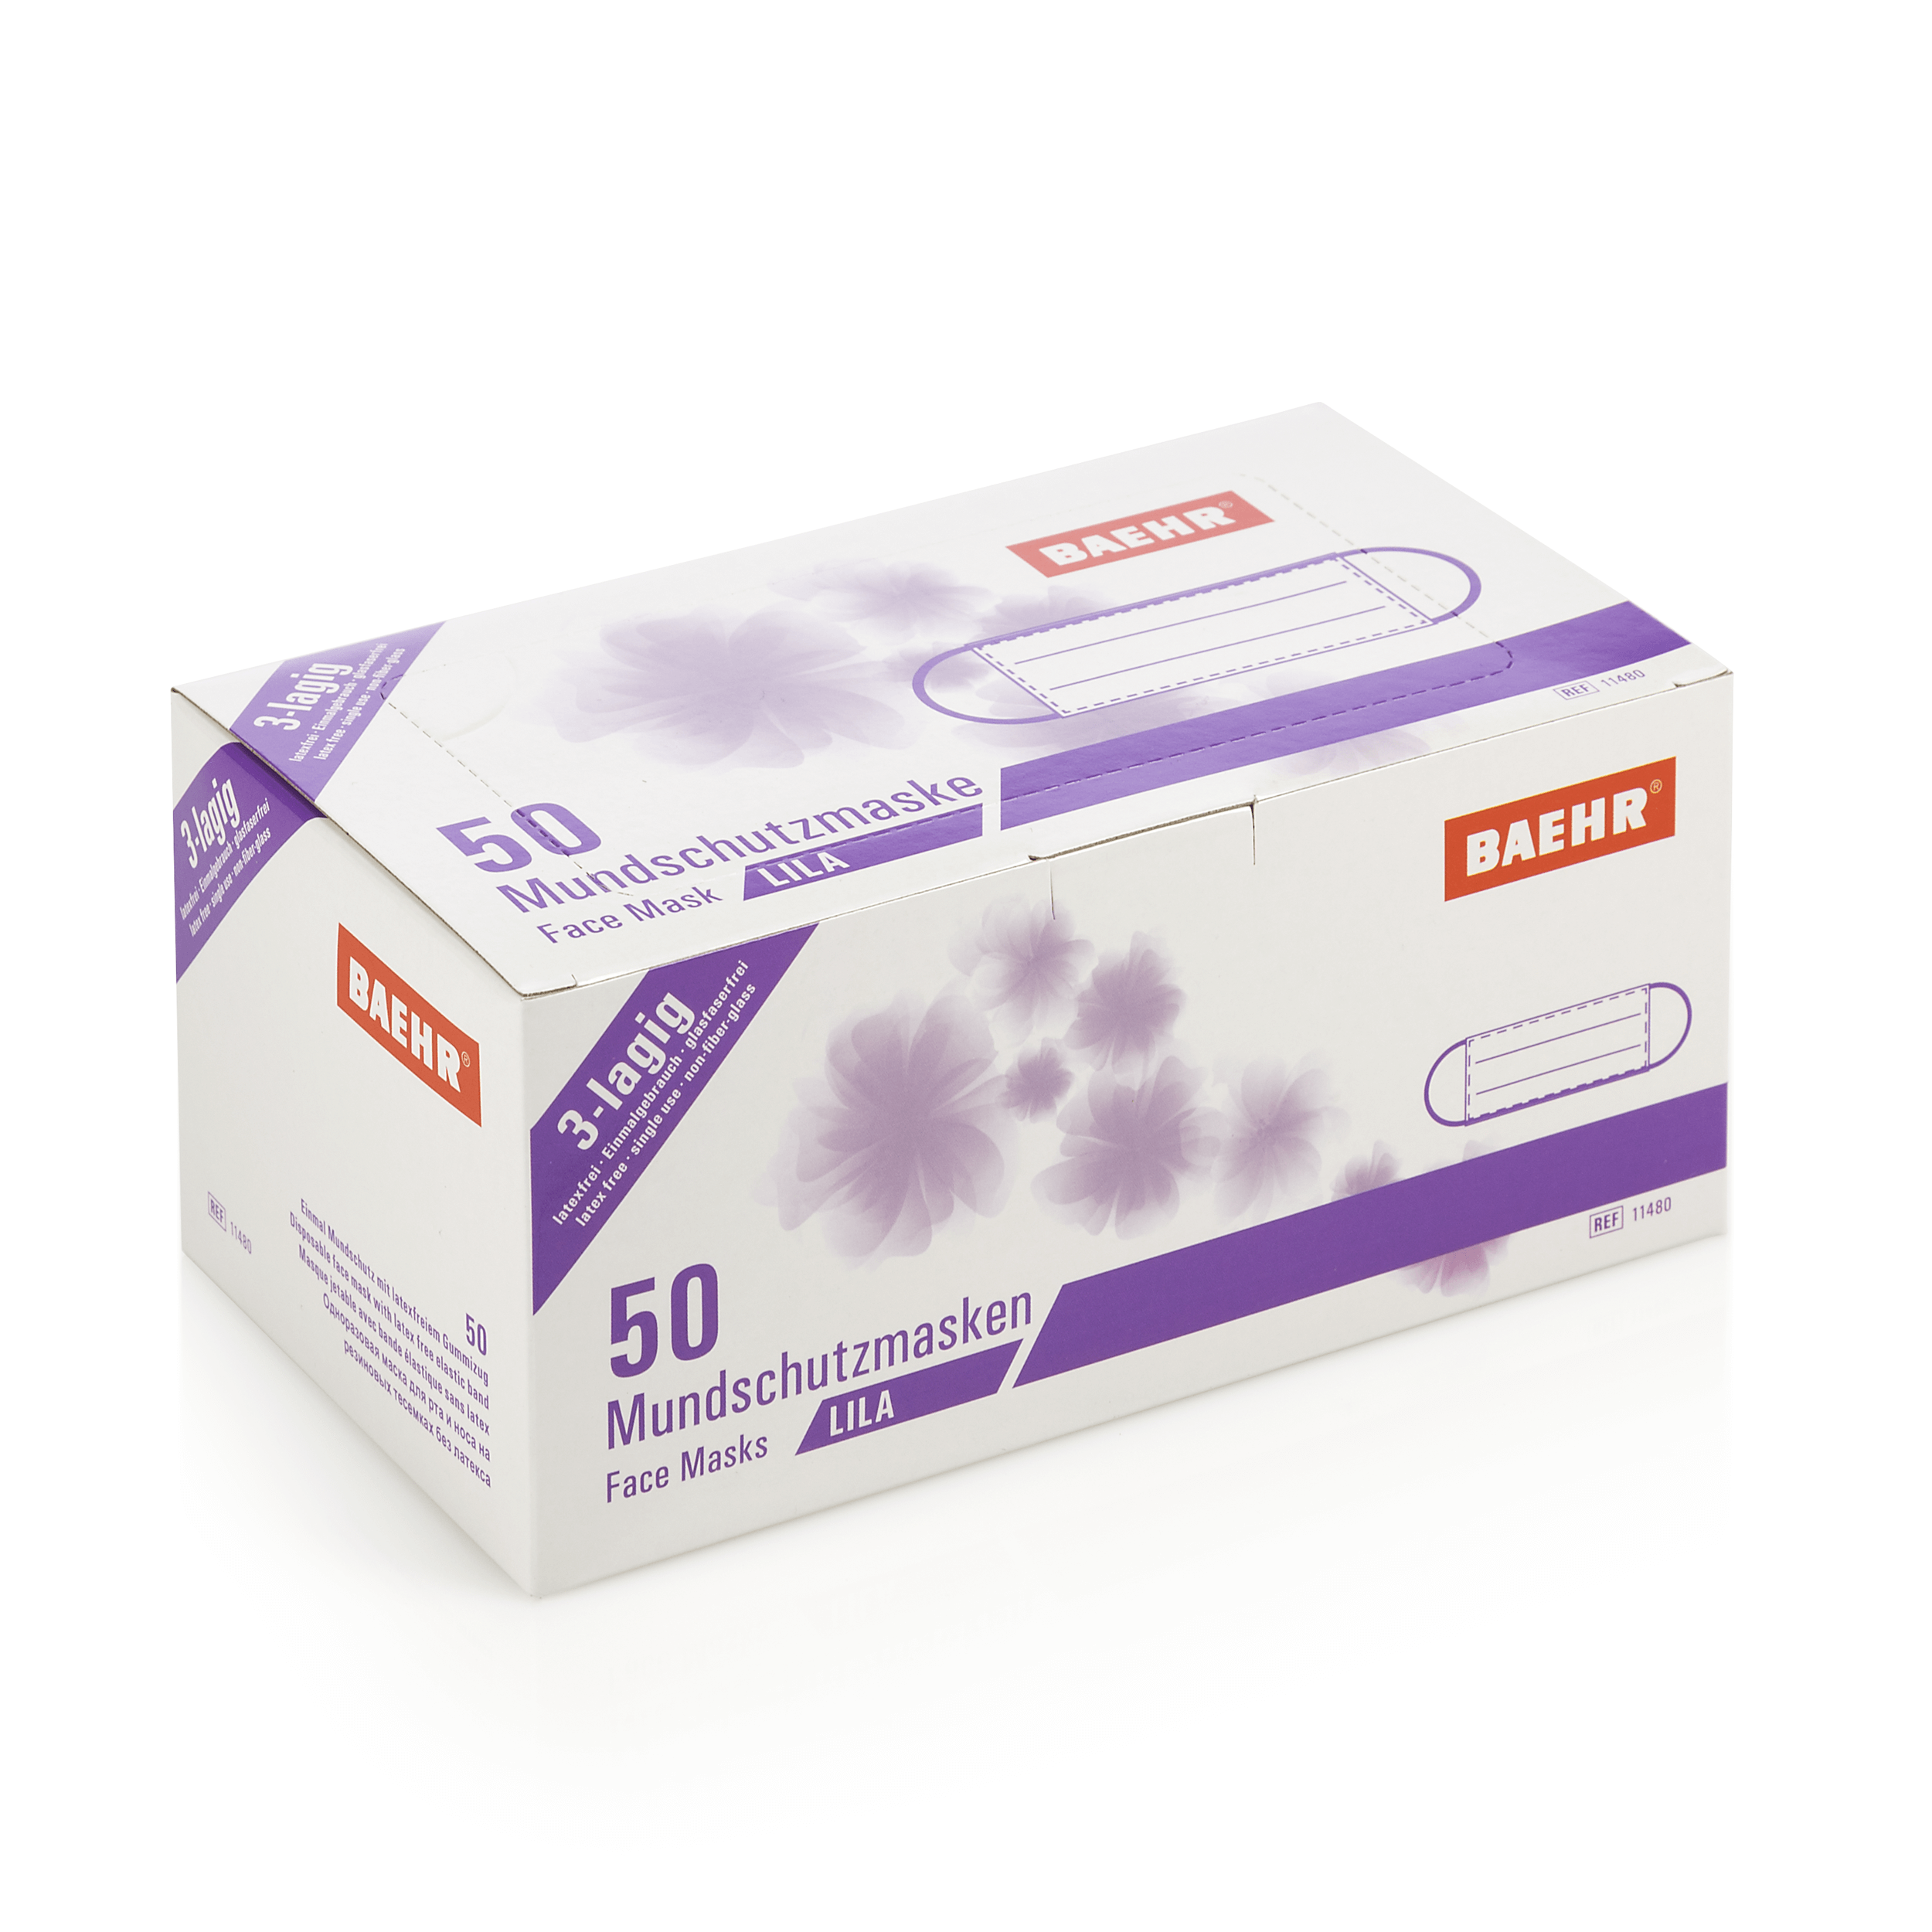 BAEHR Mundschutzmasken ECO lila, 1 Pack (50 Stück)